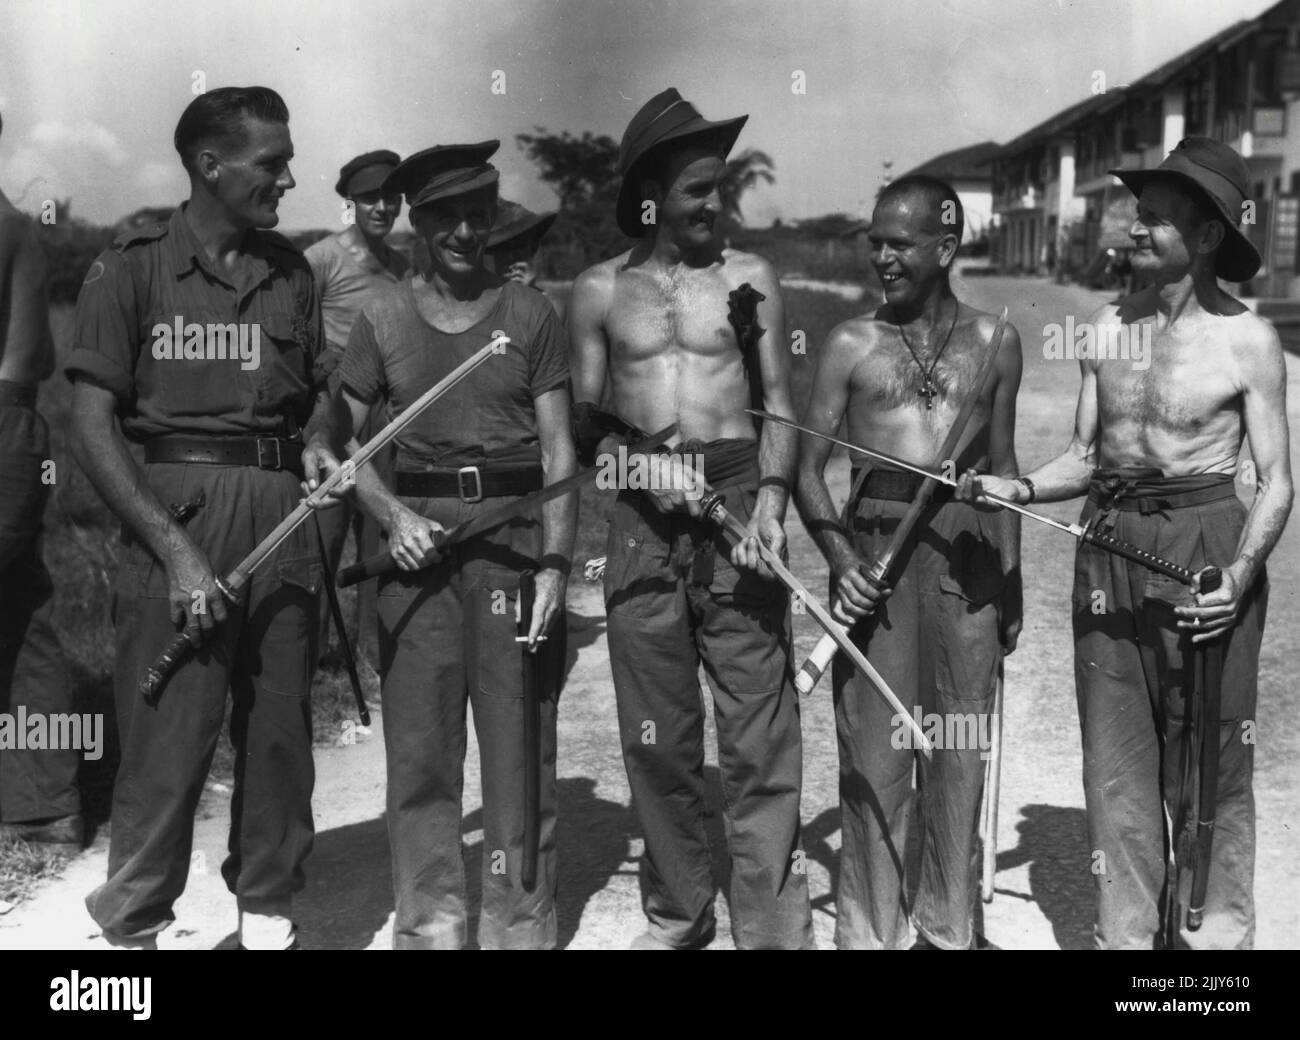 8 División ex-prisioneros de guerra de los japoneses de Tailandia mostrando espadas japonesas que adquirieron de oficiales japoneses. El personal identificado es: SPR. P. Samin (1); DVR. R. Grant (2); Sgt. S.A. Jarvis (3); Pte. R.W. Thiel (4); WO1 J. Unsworth (5). 15 de septiembre de 1945. (Foto de Australian War Memorial Canberra). Foto de stock